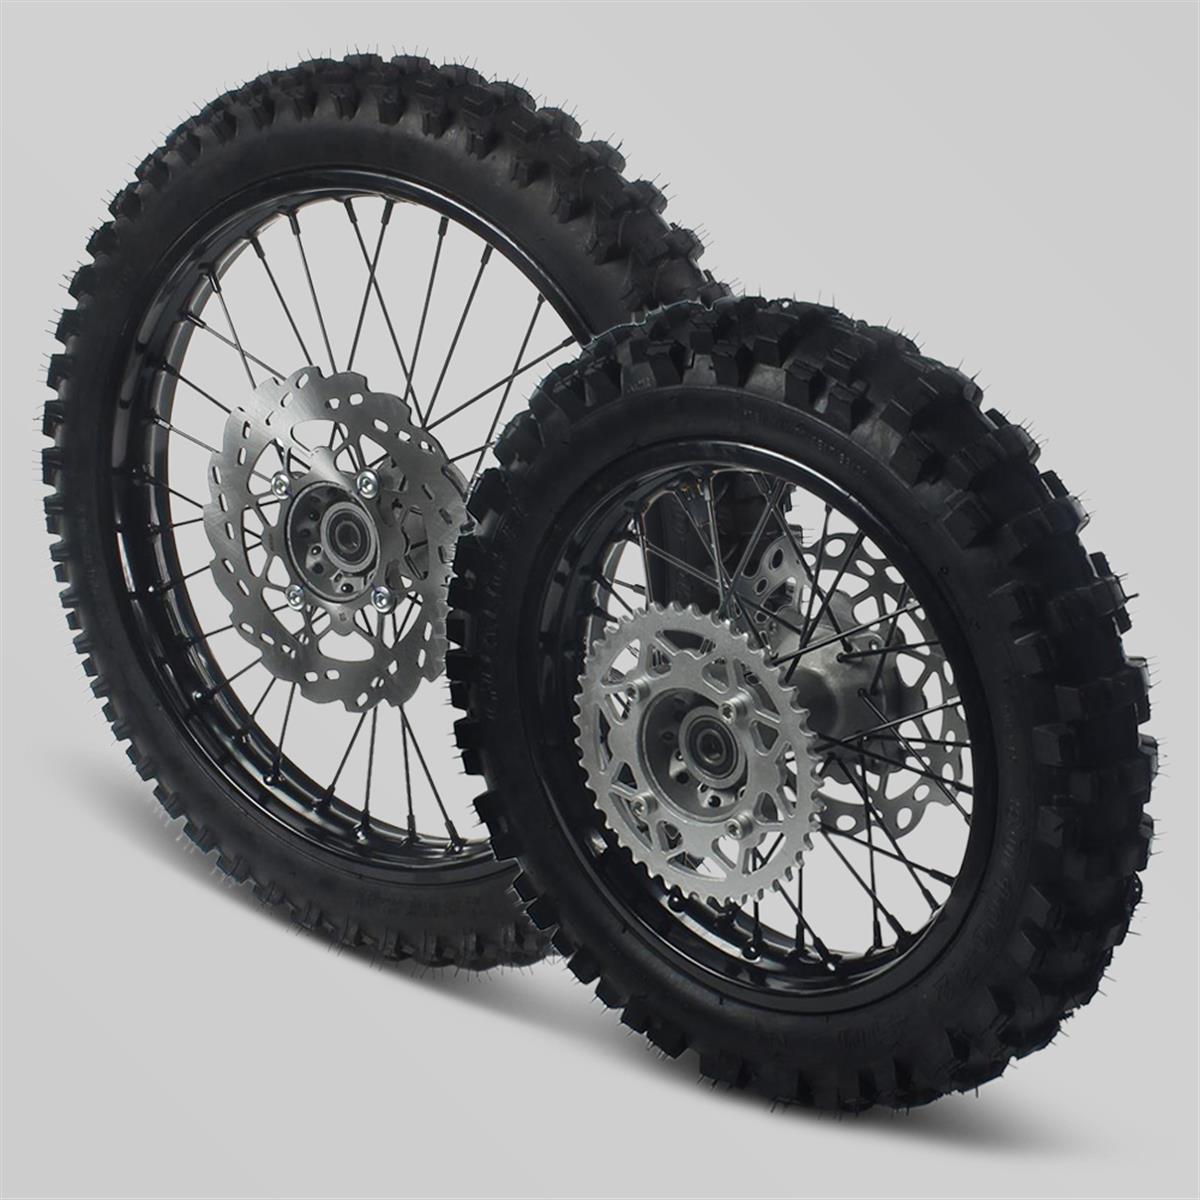 Pack de roue complète 14"/17" pour Dirt Bike / Pit Bike / Minimoto |  Smallmx - Dirt bike, Pit bike, Quads, Minimoto